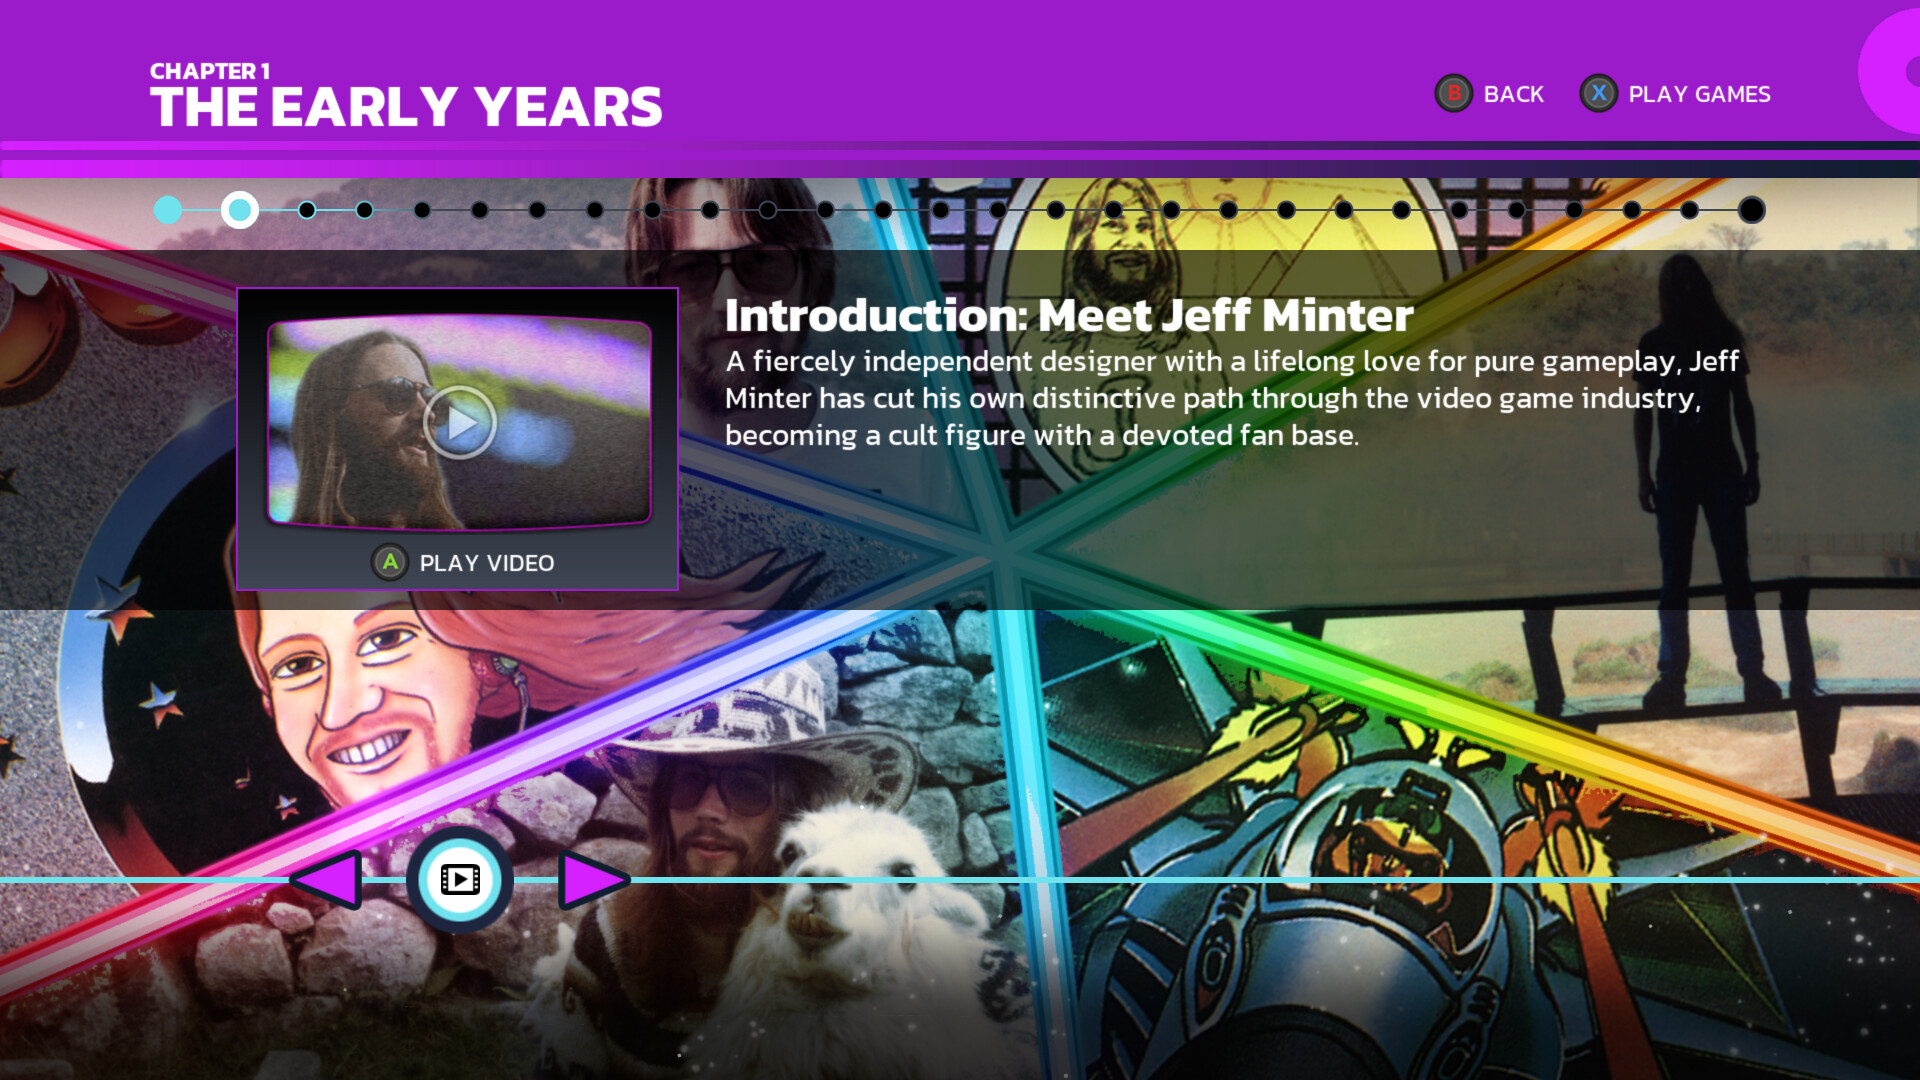 互动影像纪录游戏《杰夫·明特的故事》现已正式推出